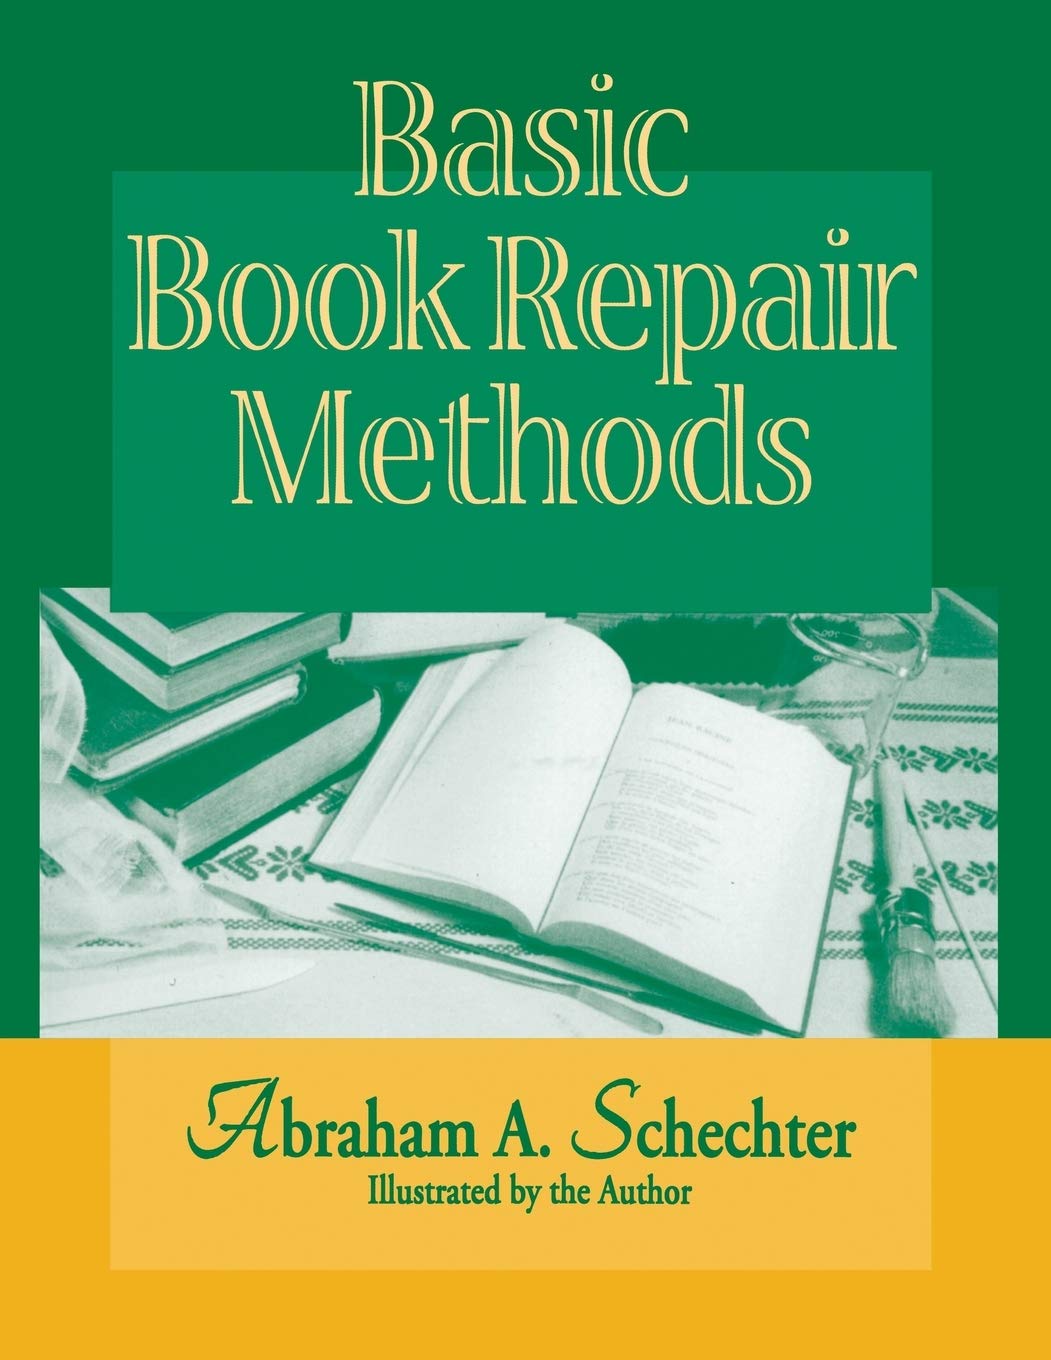 BASIC BOOK REPAIR METHODS